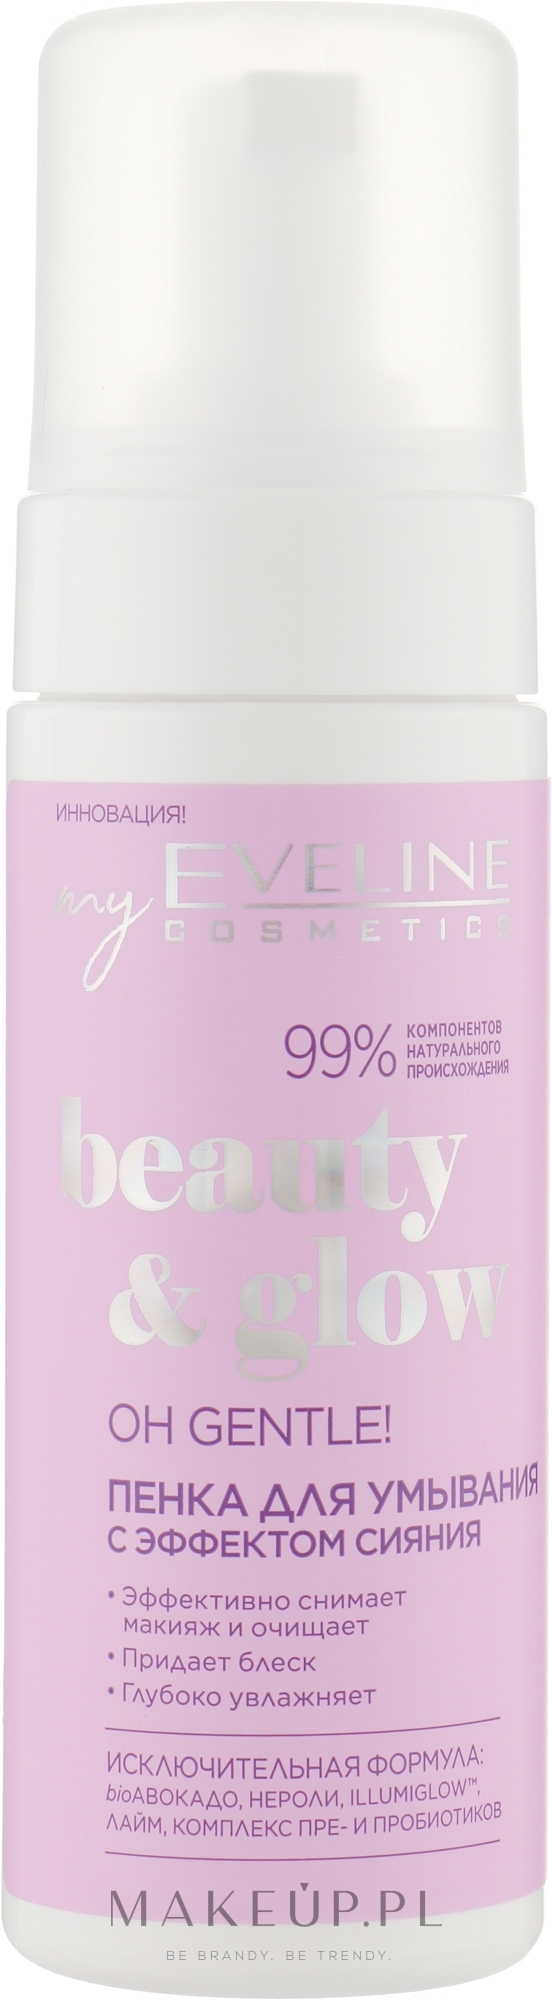 Rozświetlająca pianka do mycia twarzy - Eveline Cosmetics Beuty & Glow Oh Gentle! Illuminating Face Cleansing Foam — Zdjęcie 150 ml